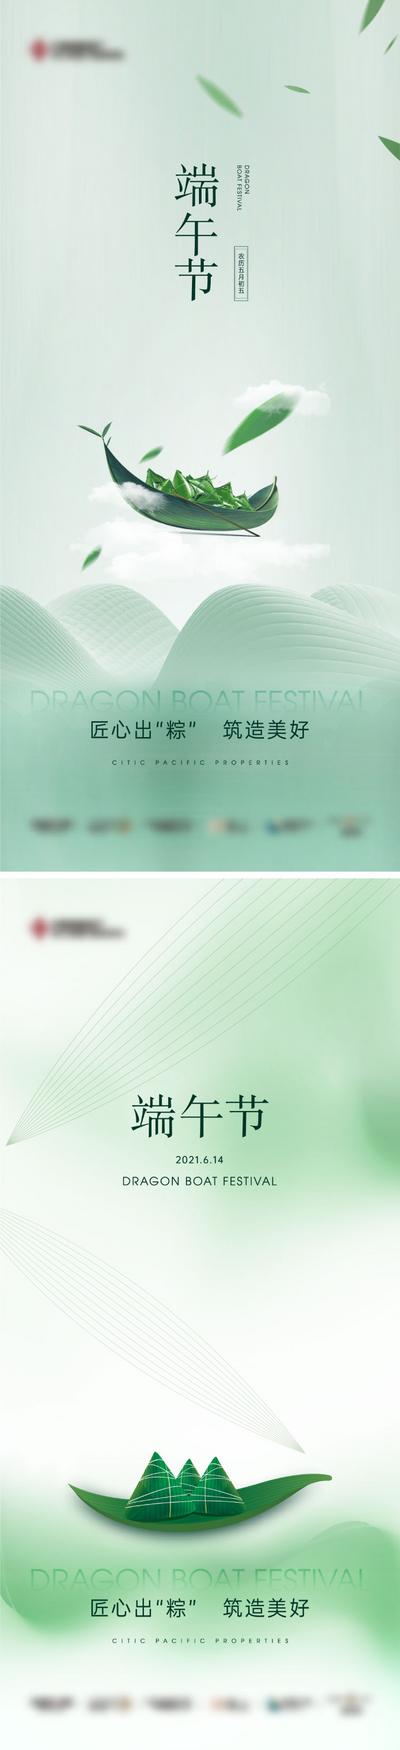 南门网 海报 中国传统节日 端午节 龙舟 粽子 系列